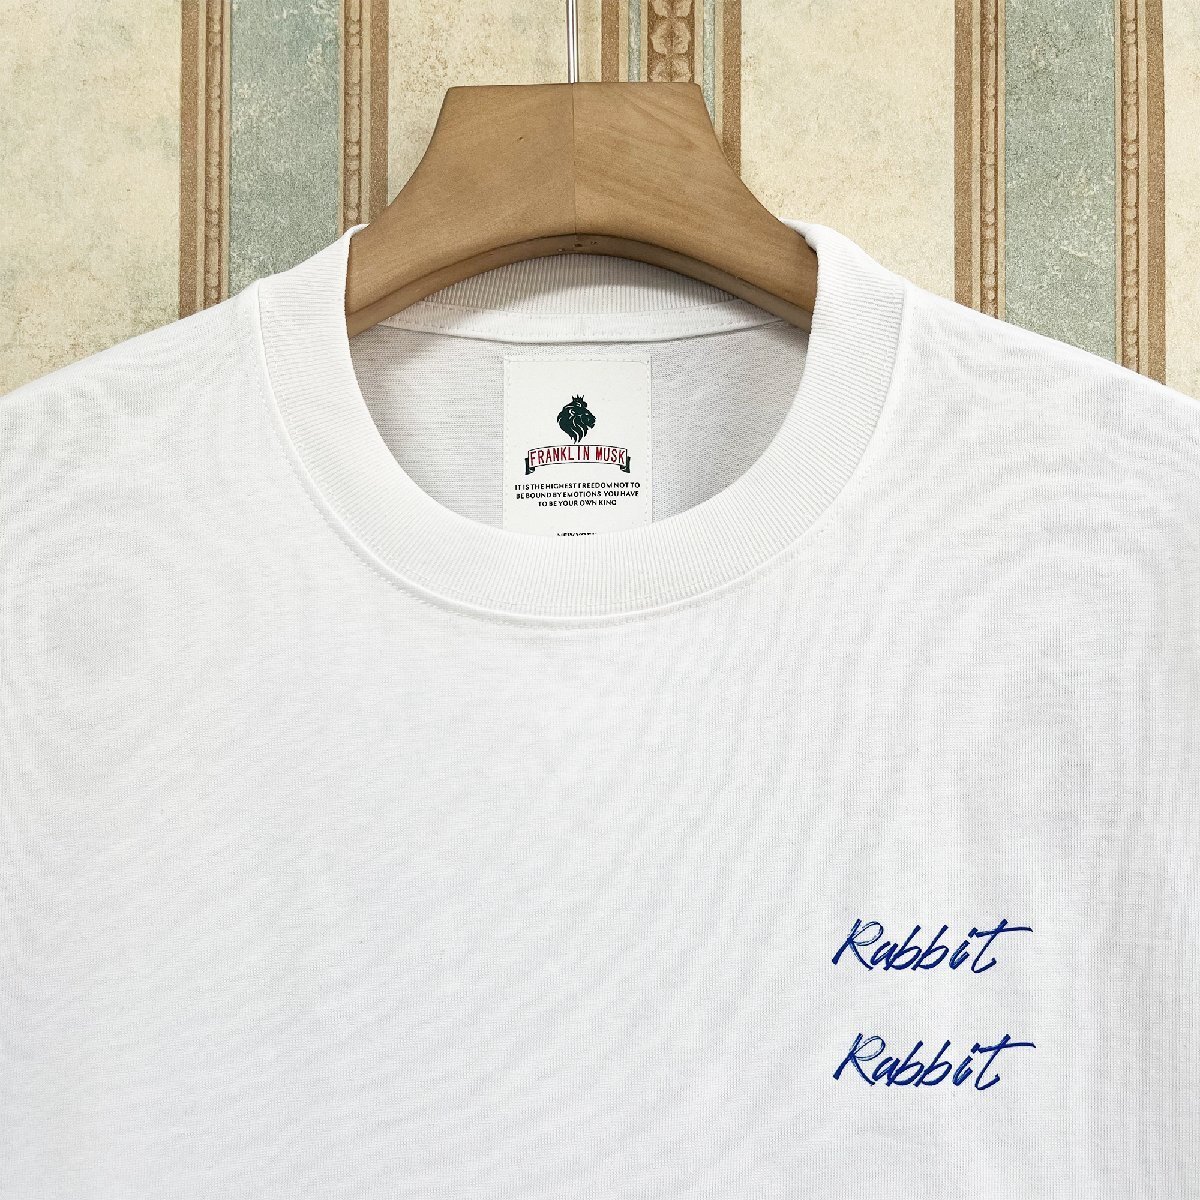 逸品 定価2万 FRANKLIN MUSK・アメリカ・ニューヨーク発 半袖Tシャツ 上質 薄手 吸湿 ウサギ カットソー スタイリッシュ 日常 サイズ3_画像3